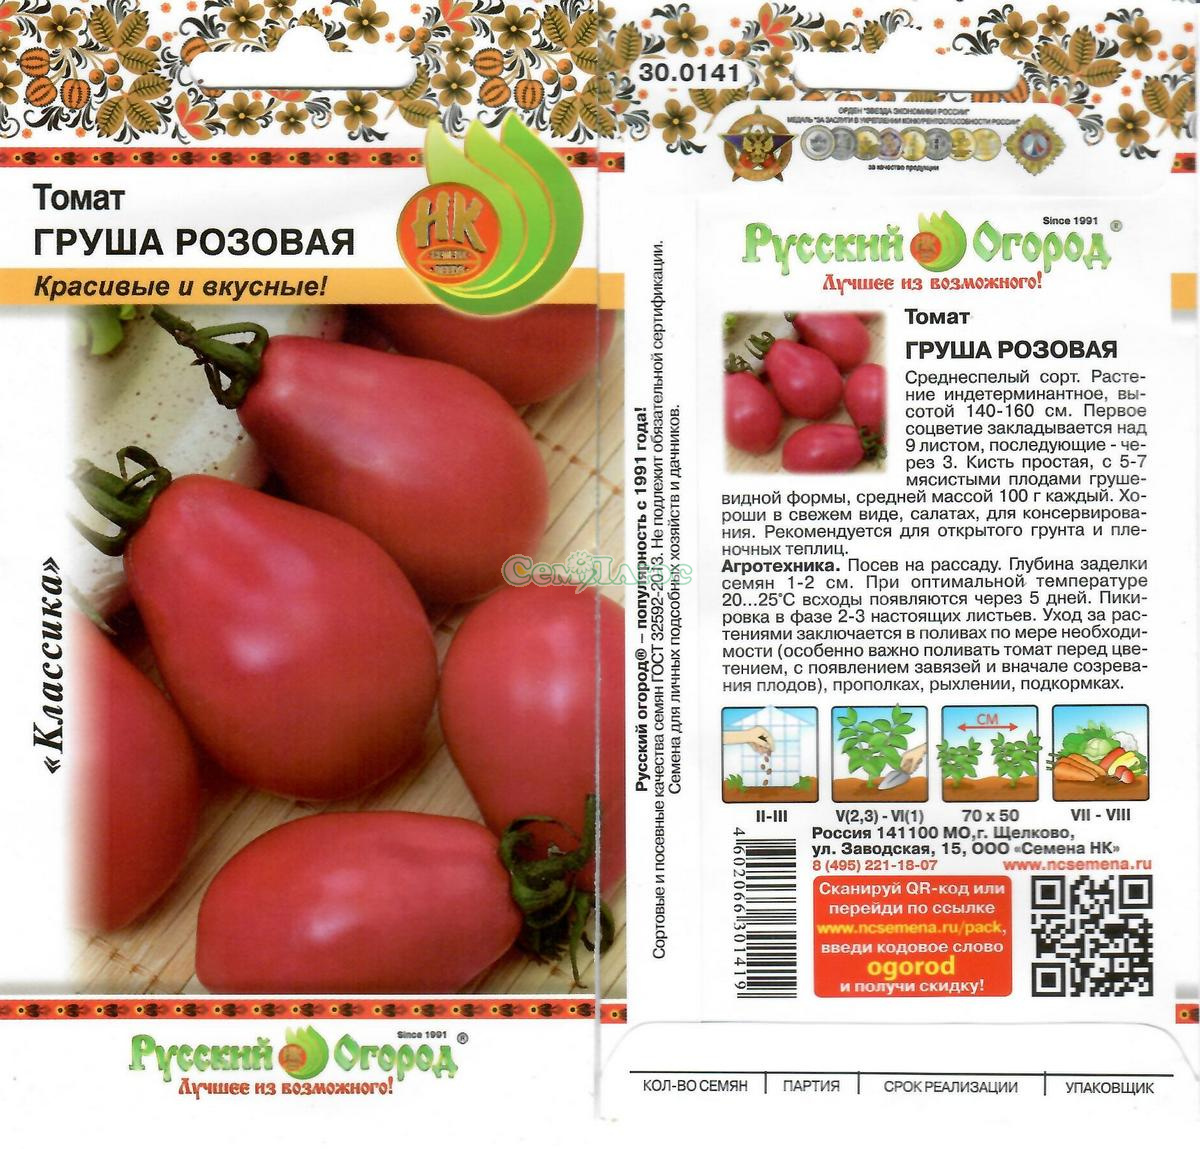 Томата "груша розовая": характеристика и описание сорта помидор с фото, отзывы об урожайности